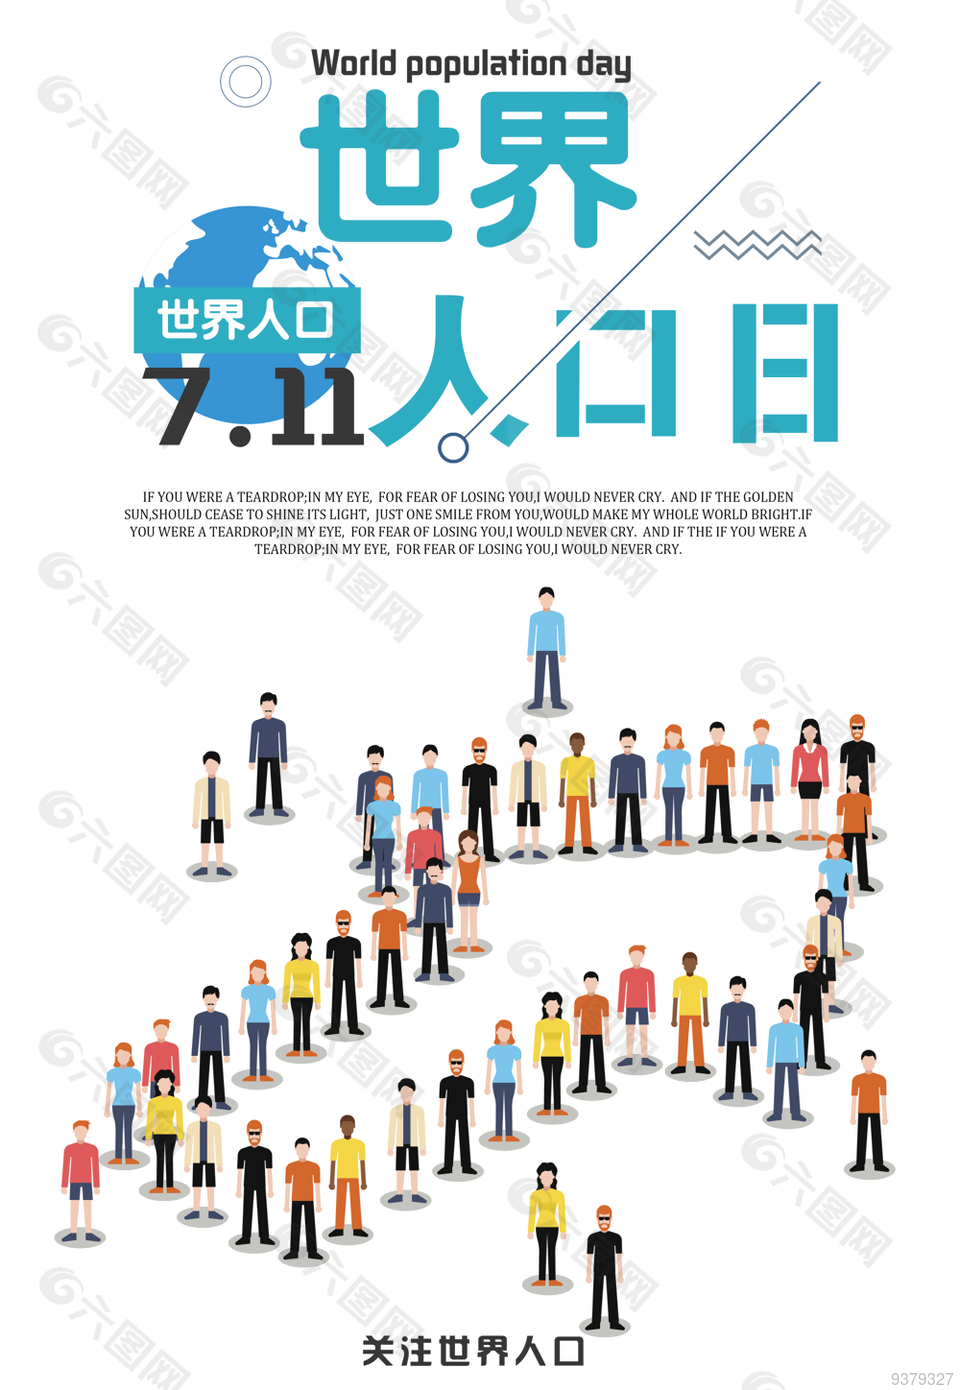 7.11世界人口日海报设计